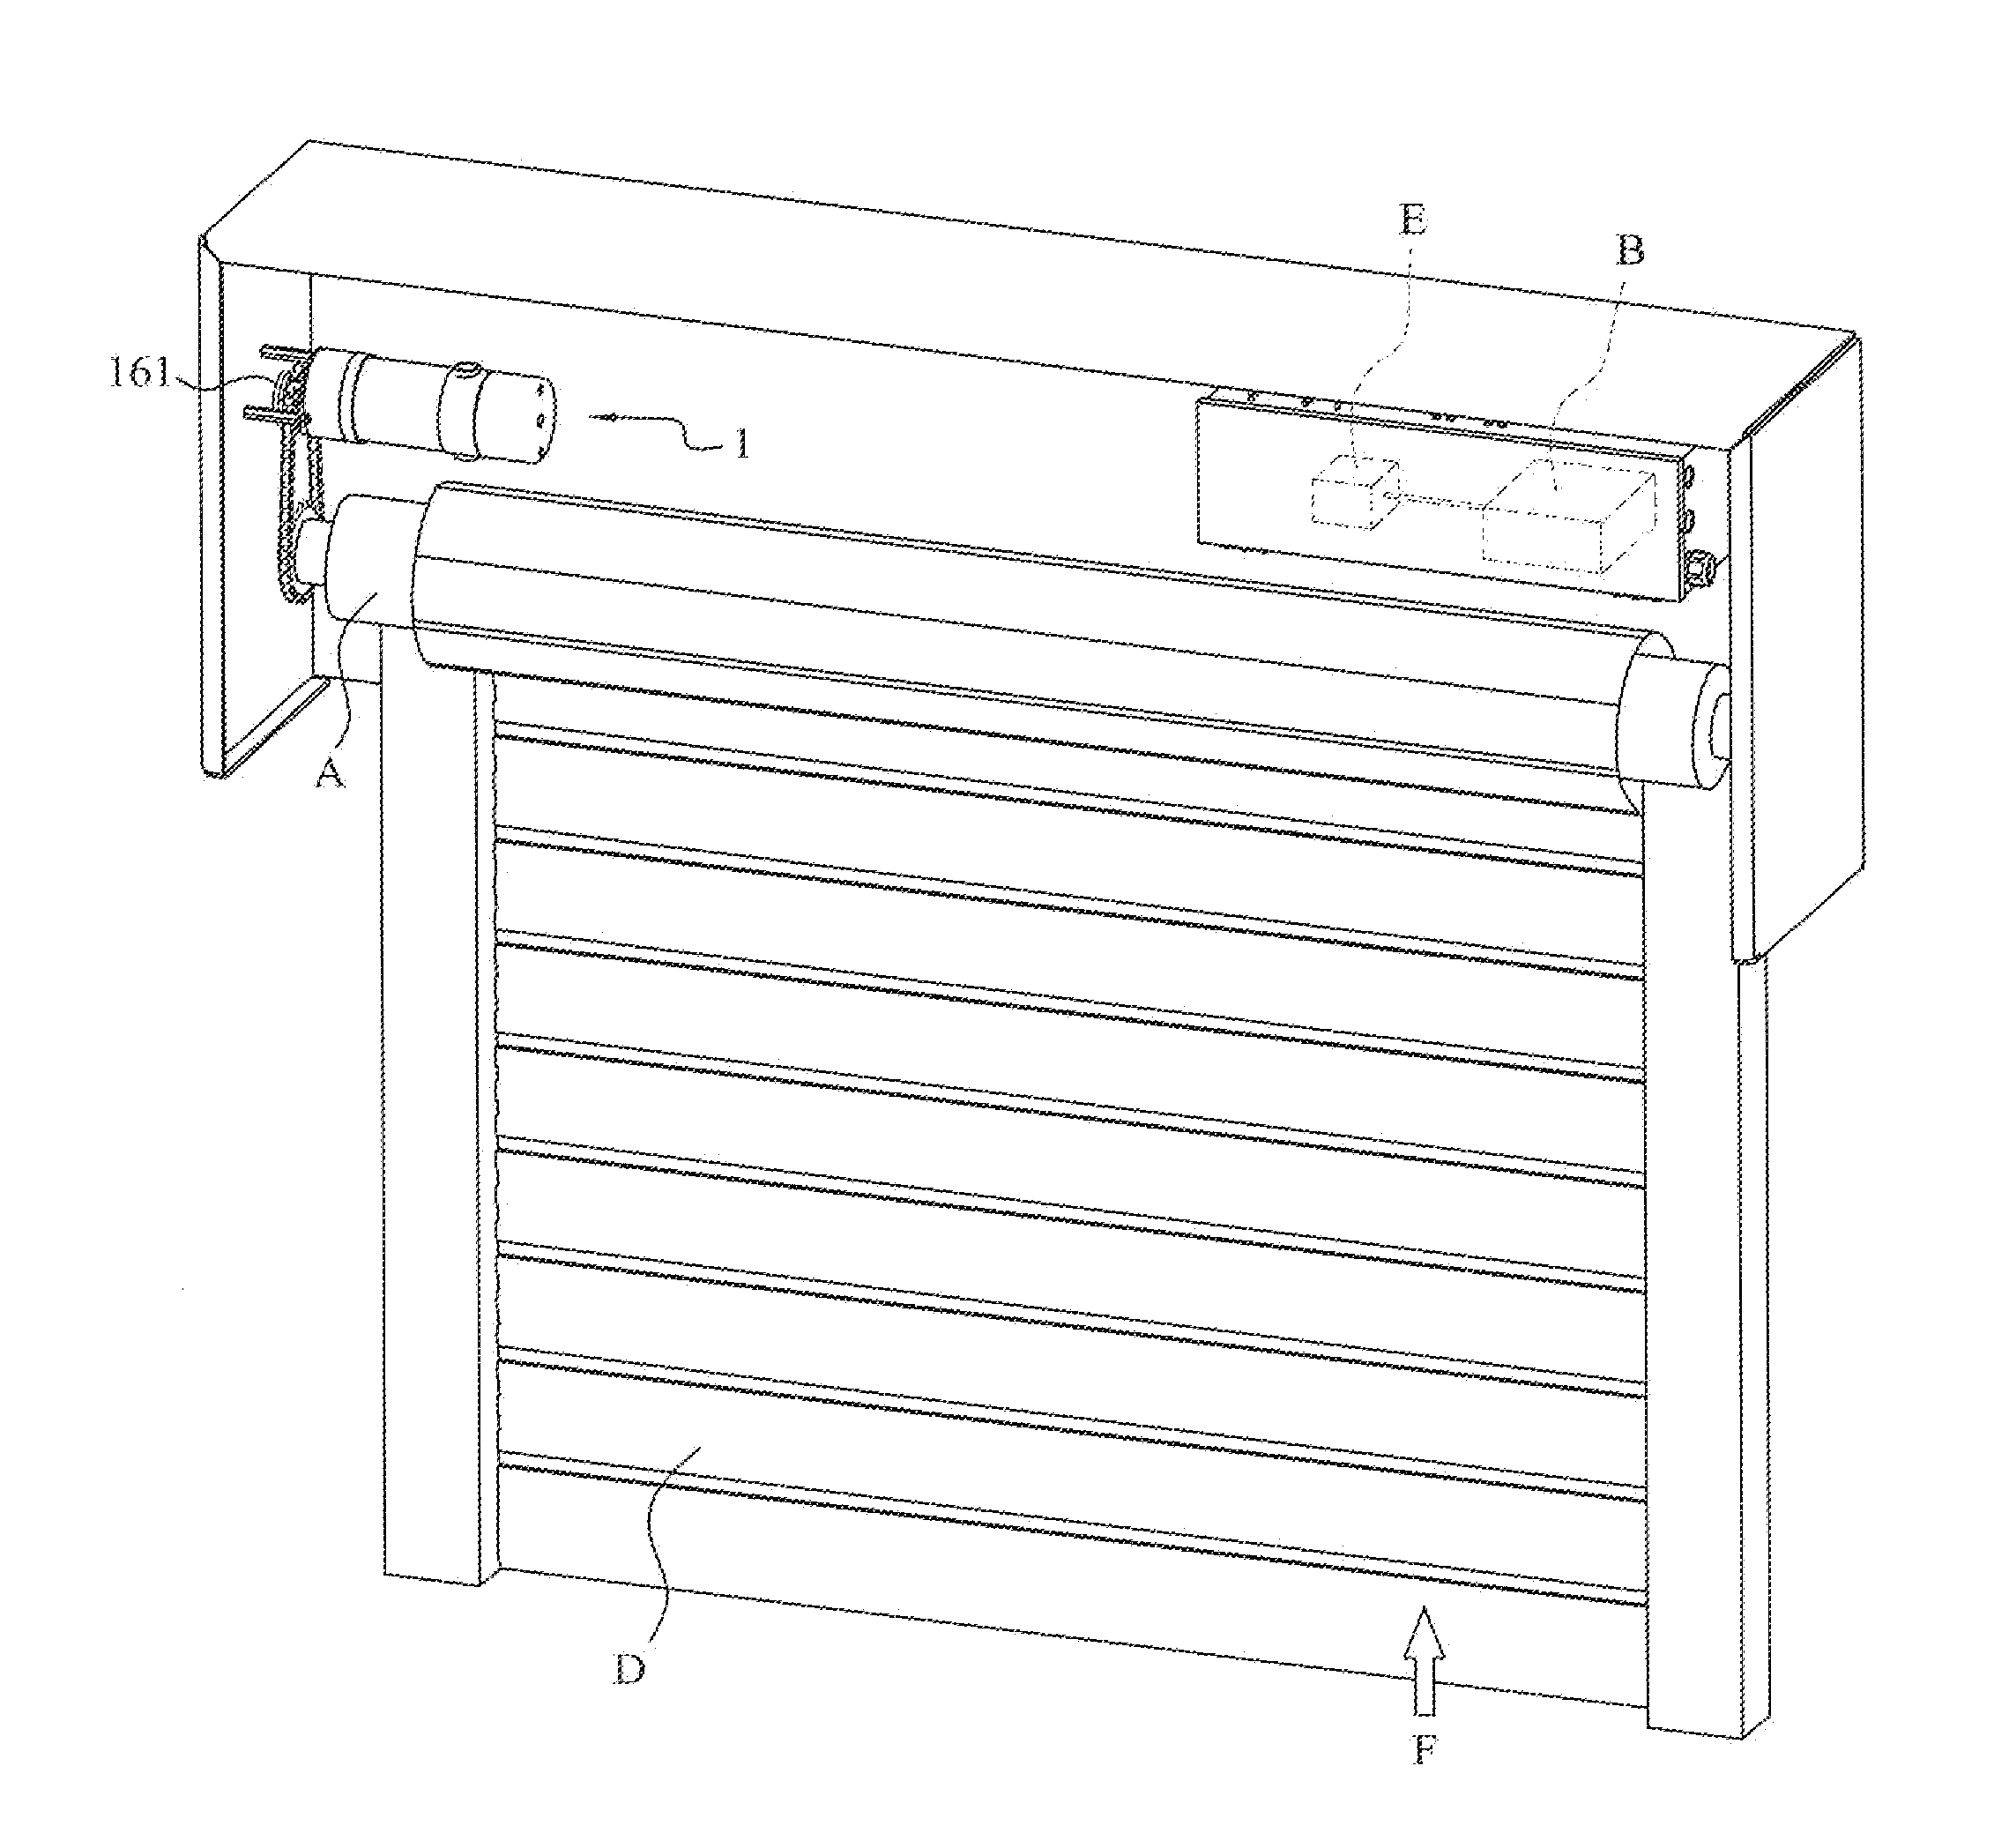 Door machine mechanism for rolling door having functions of fireproof, smokeproof, and fire escape